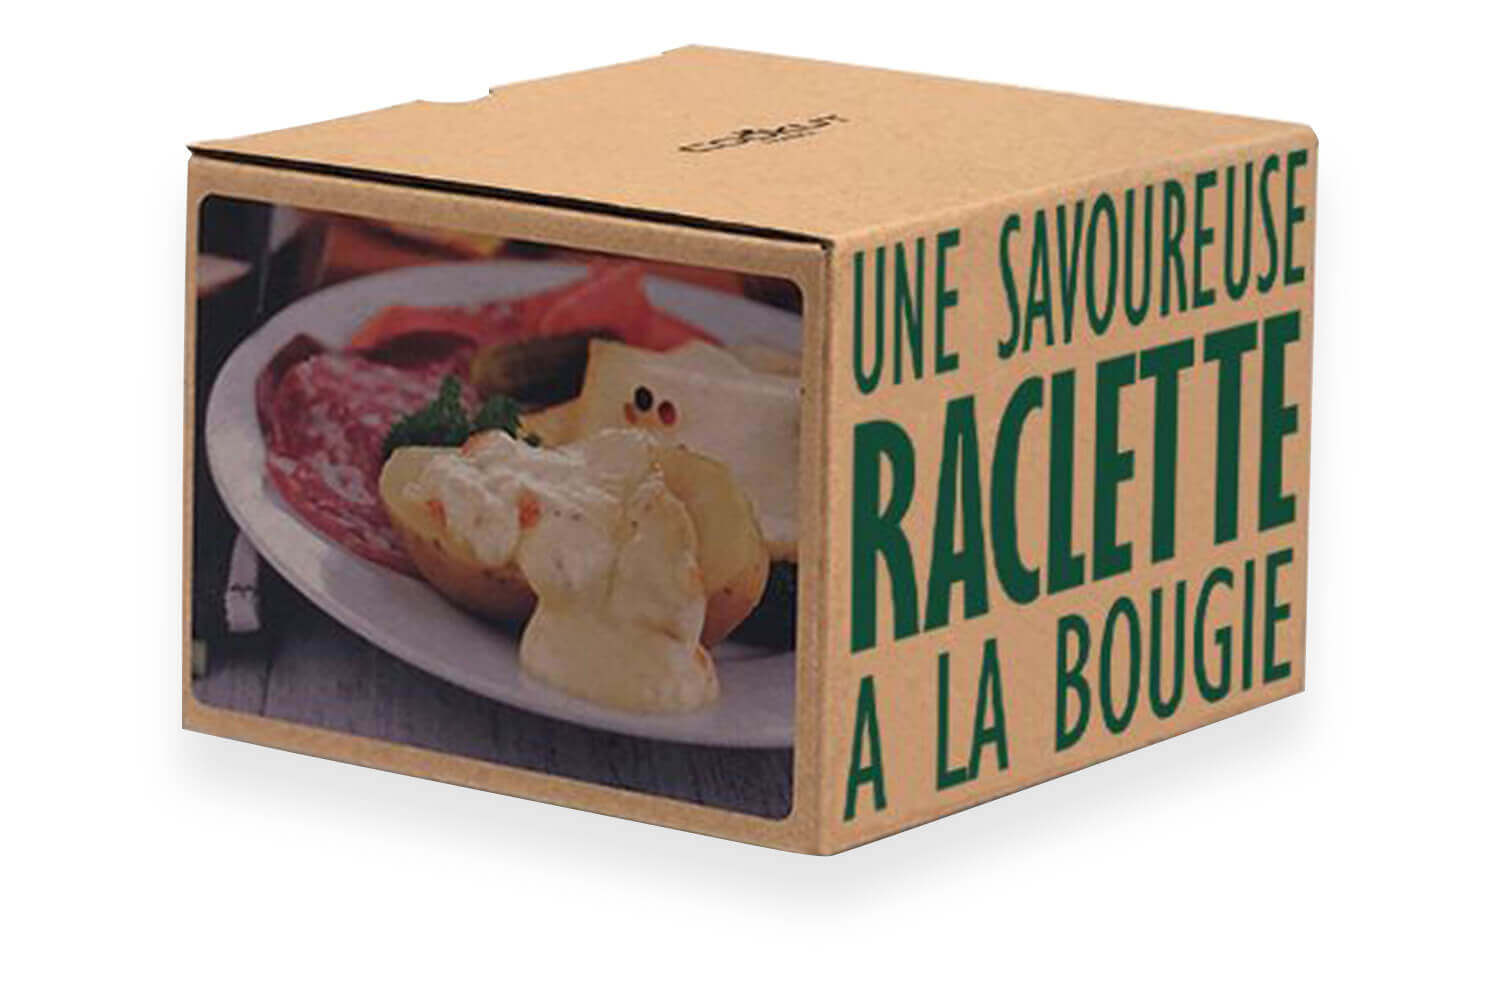 Cookut - Raclette à la bougie - 2 personnes, France